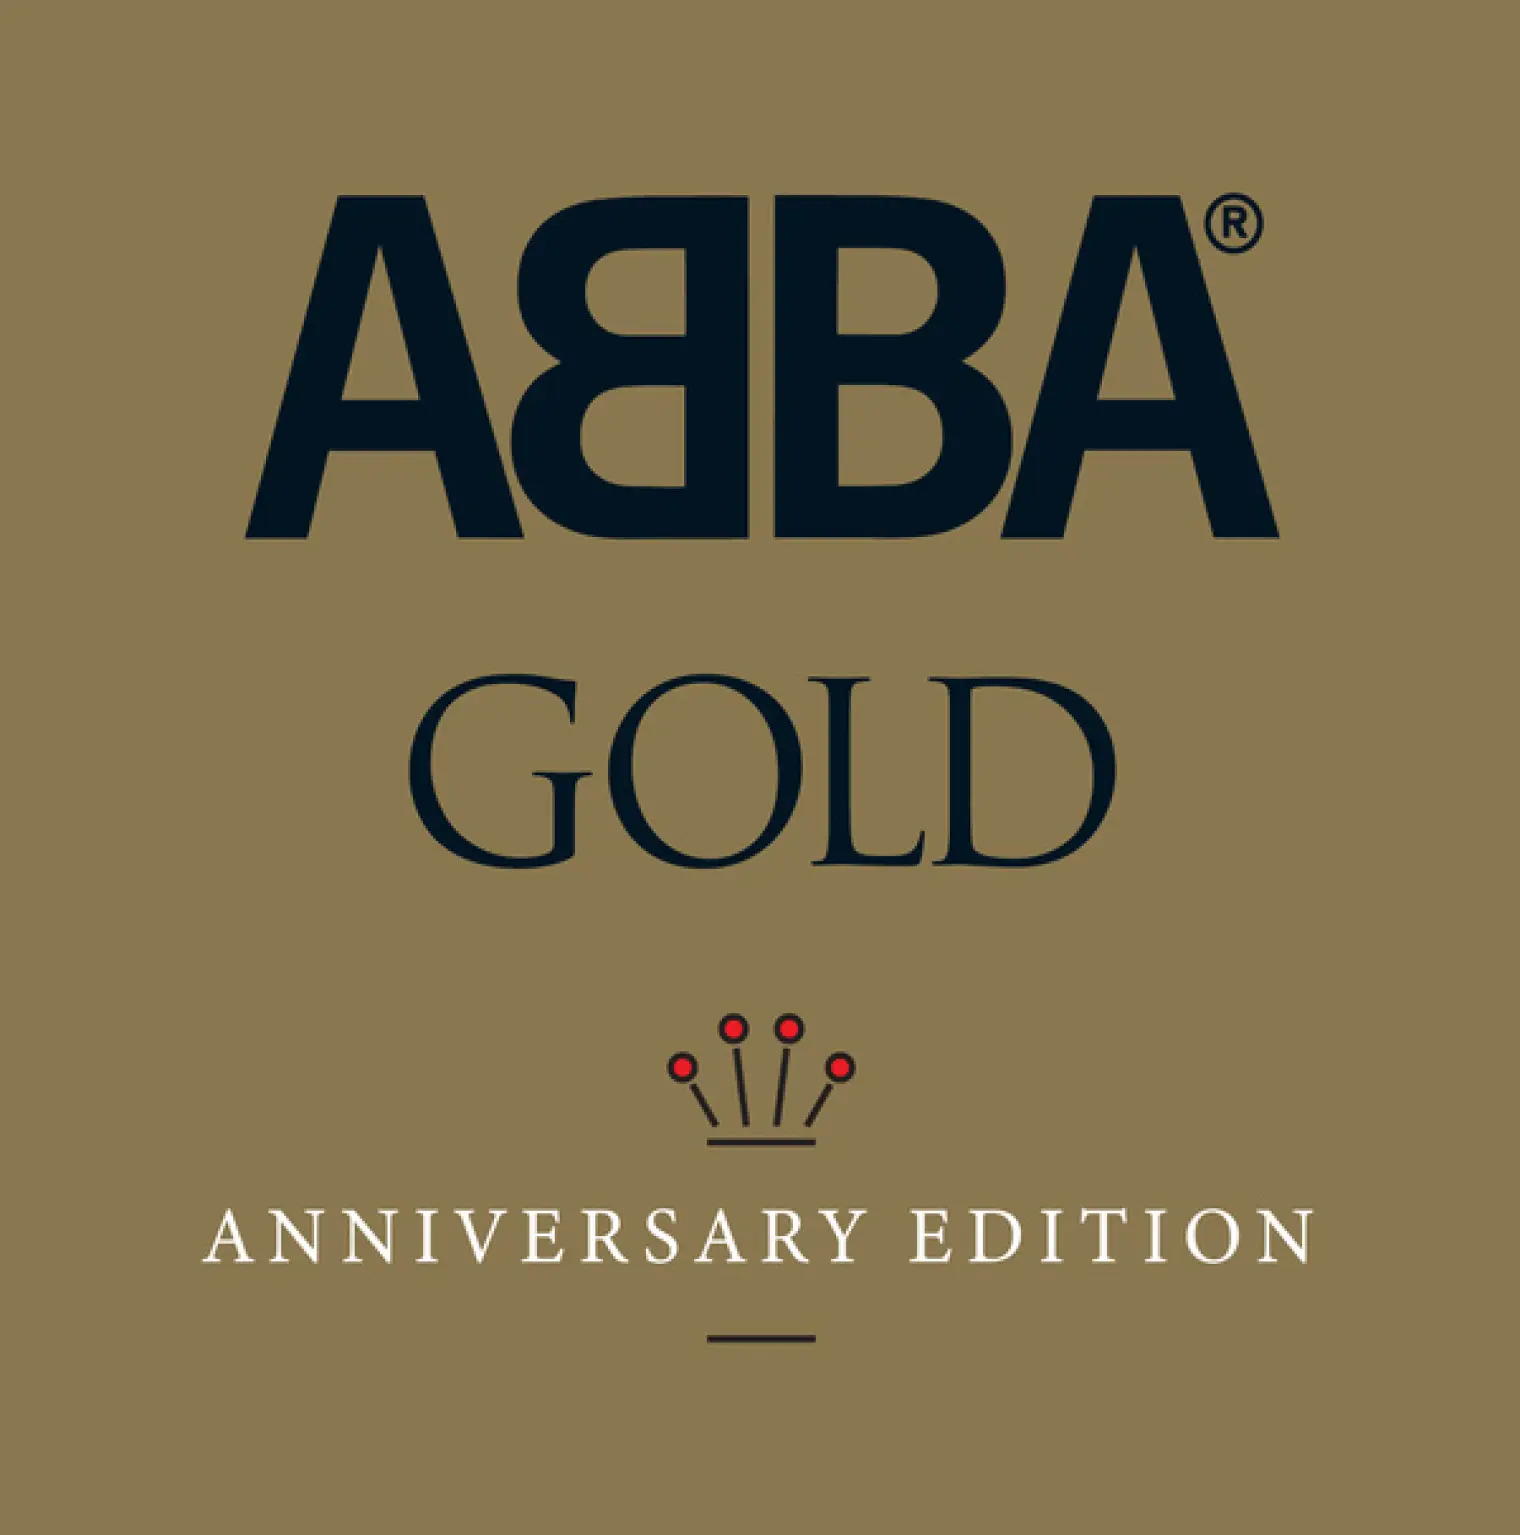 Abba Gold Anniversary Edition -  Abba 